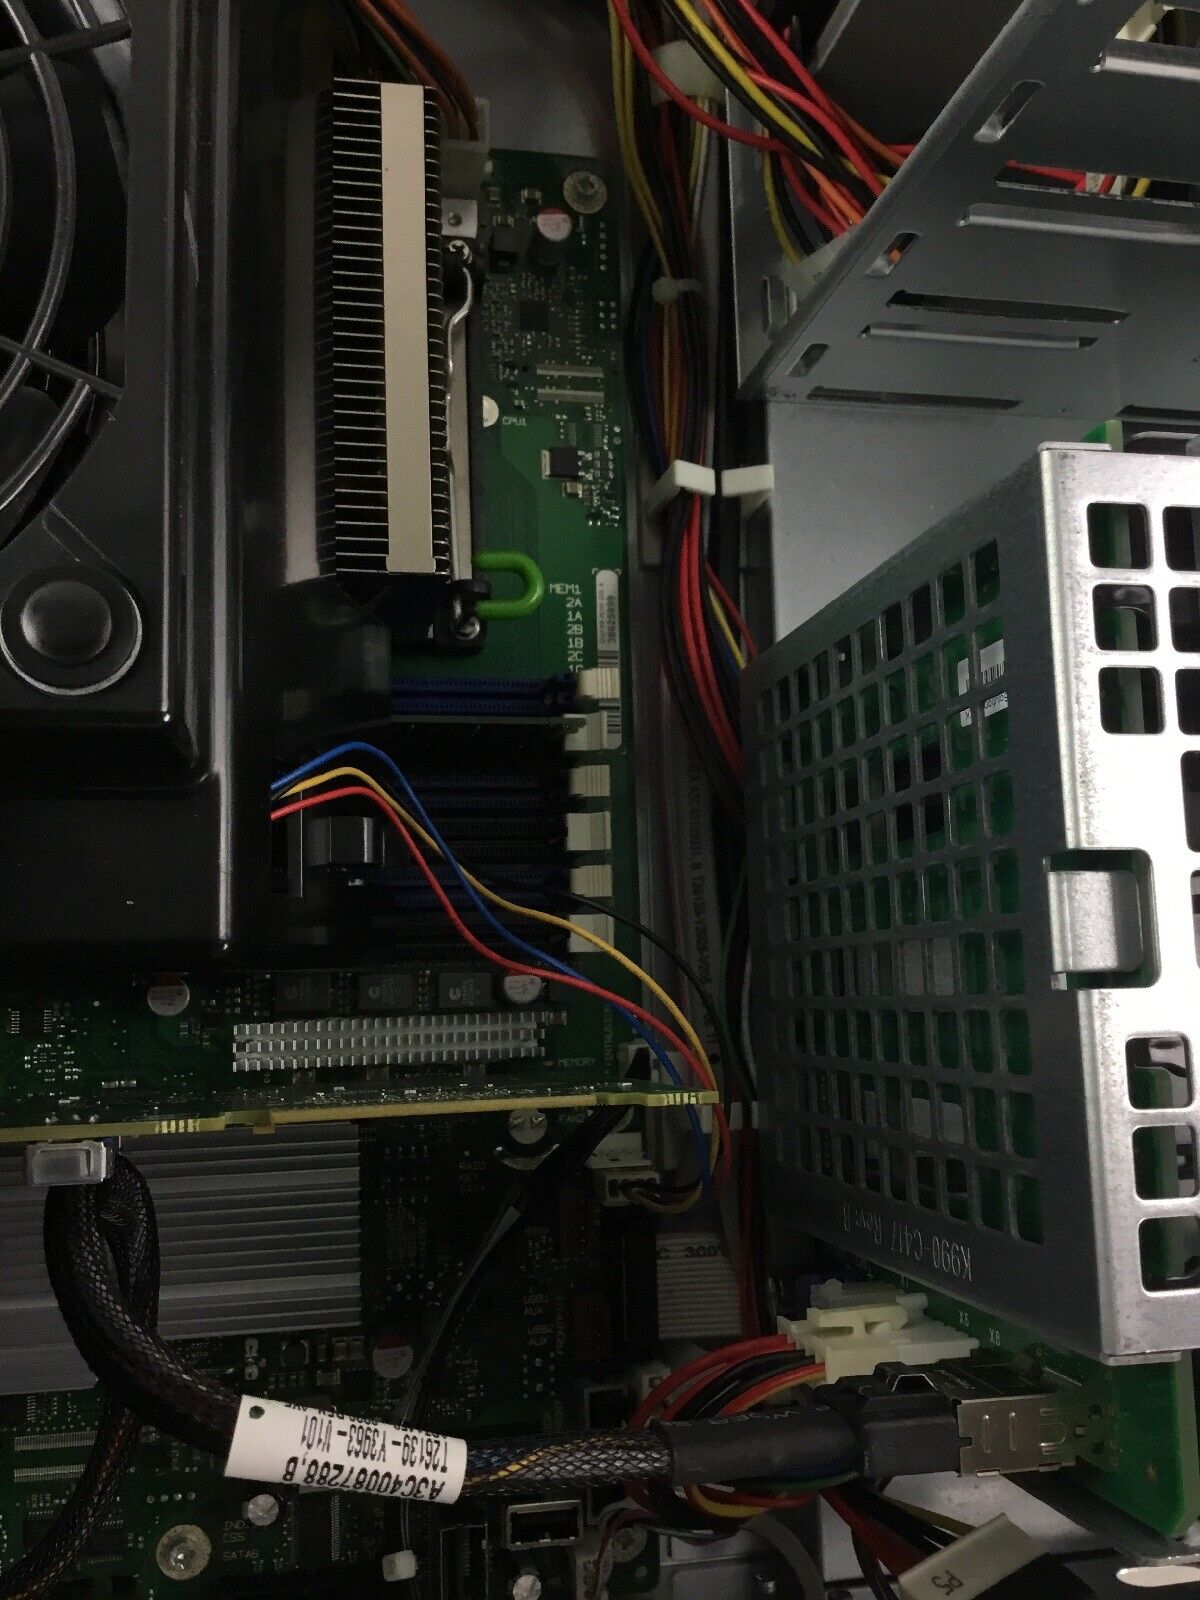 Fujitsu Primergy TX200 S6 Quad Core E5606 2.13 GHz 4 GB Ram - No HDD No OS